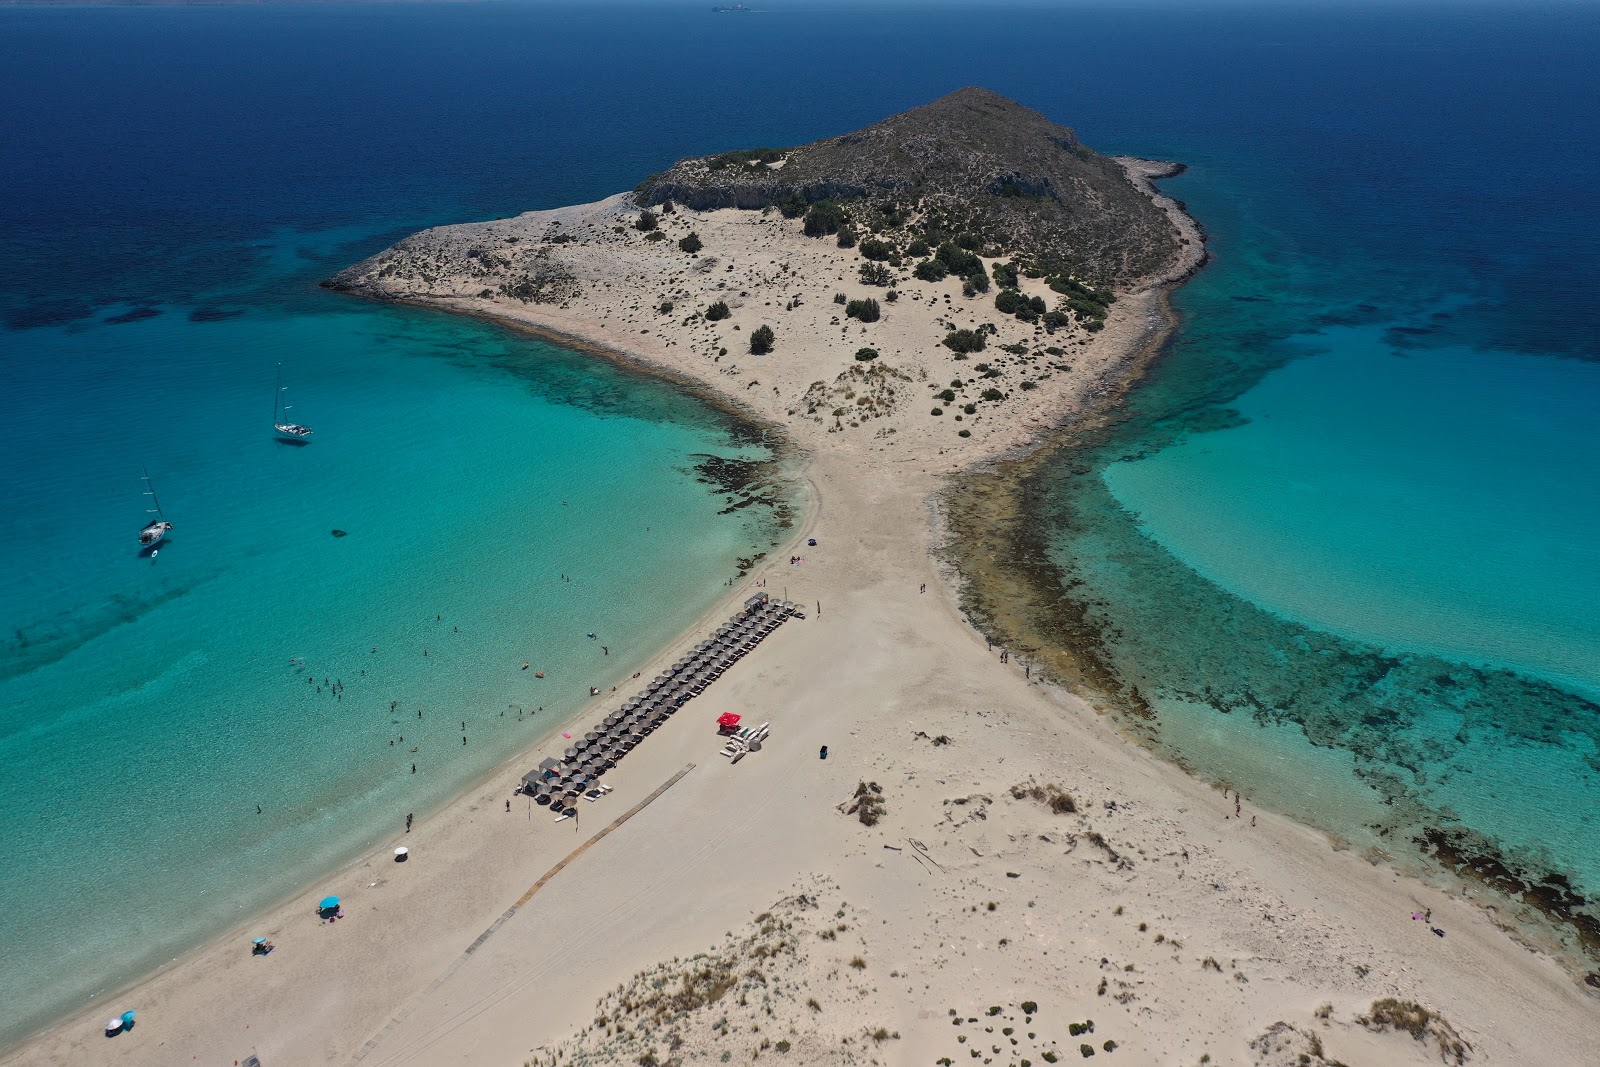 Simos Plajı'in fotoğrafı geniş ile birlikte